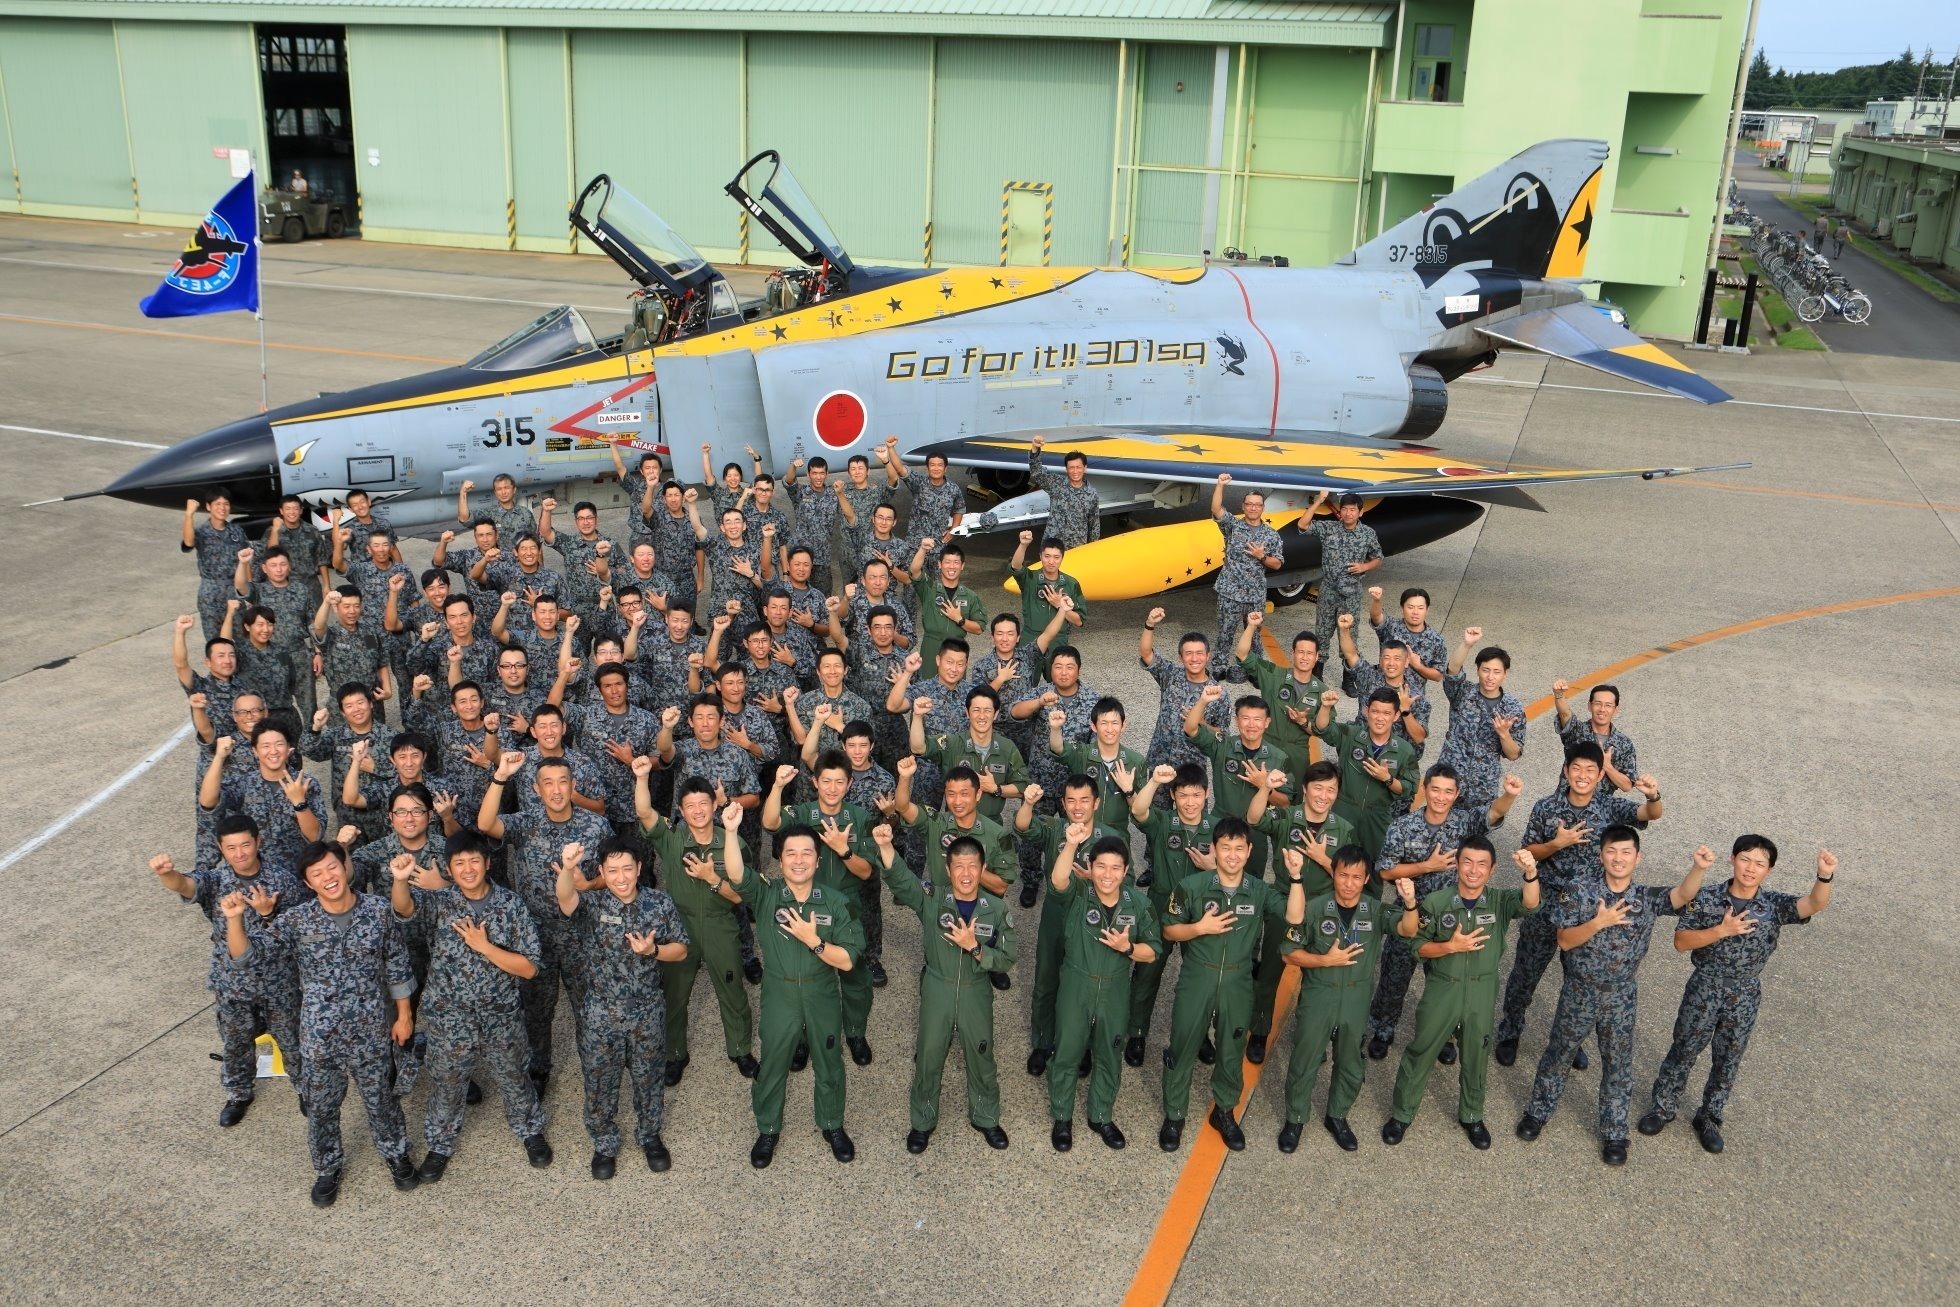 8月8日，日本航空自卫队百里基地在其社交媒体平台上发布了一组照片，展示了一架彩绘涂装的F-4战斗机以及它的涂装过程。从机身涂装上的标语可以看出，这架F-4属于第301飞行中队。在涂装完毕后，该基地的空自人员们摆出庆祝动作进行了合影。